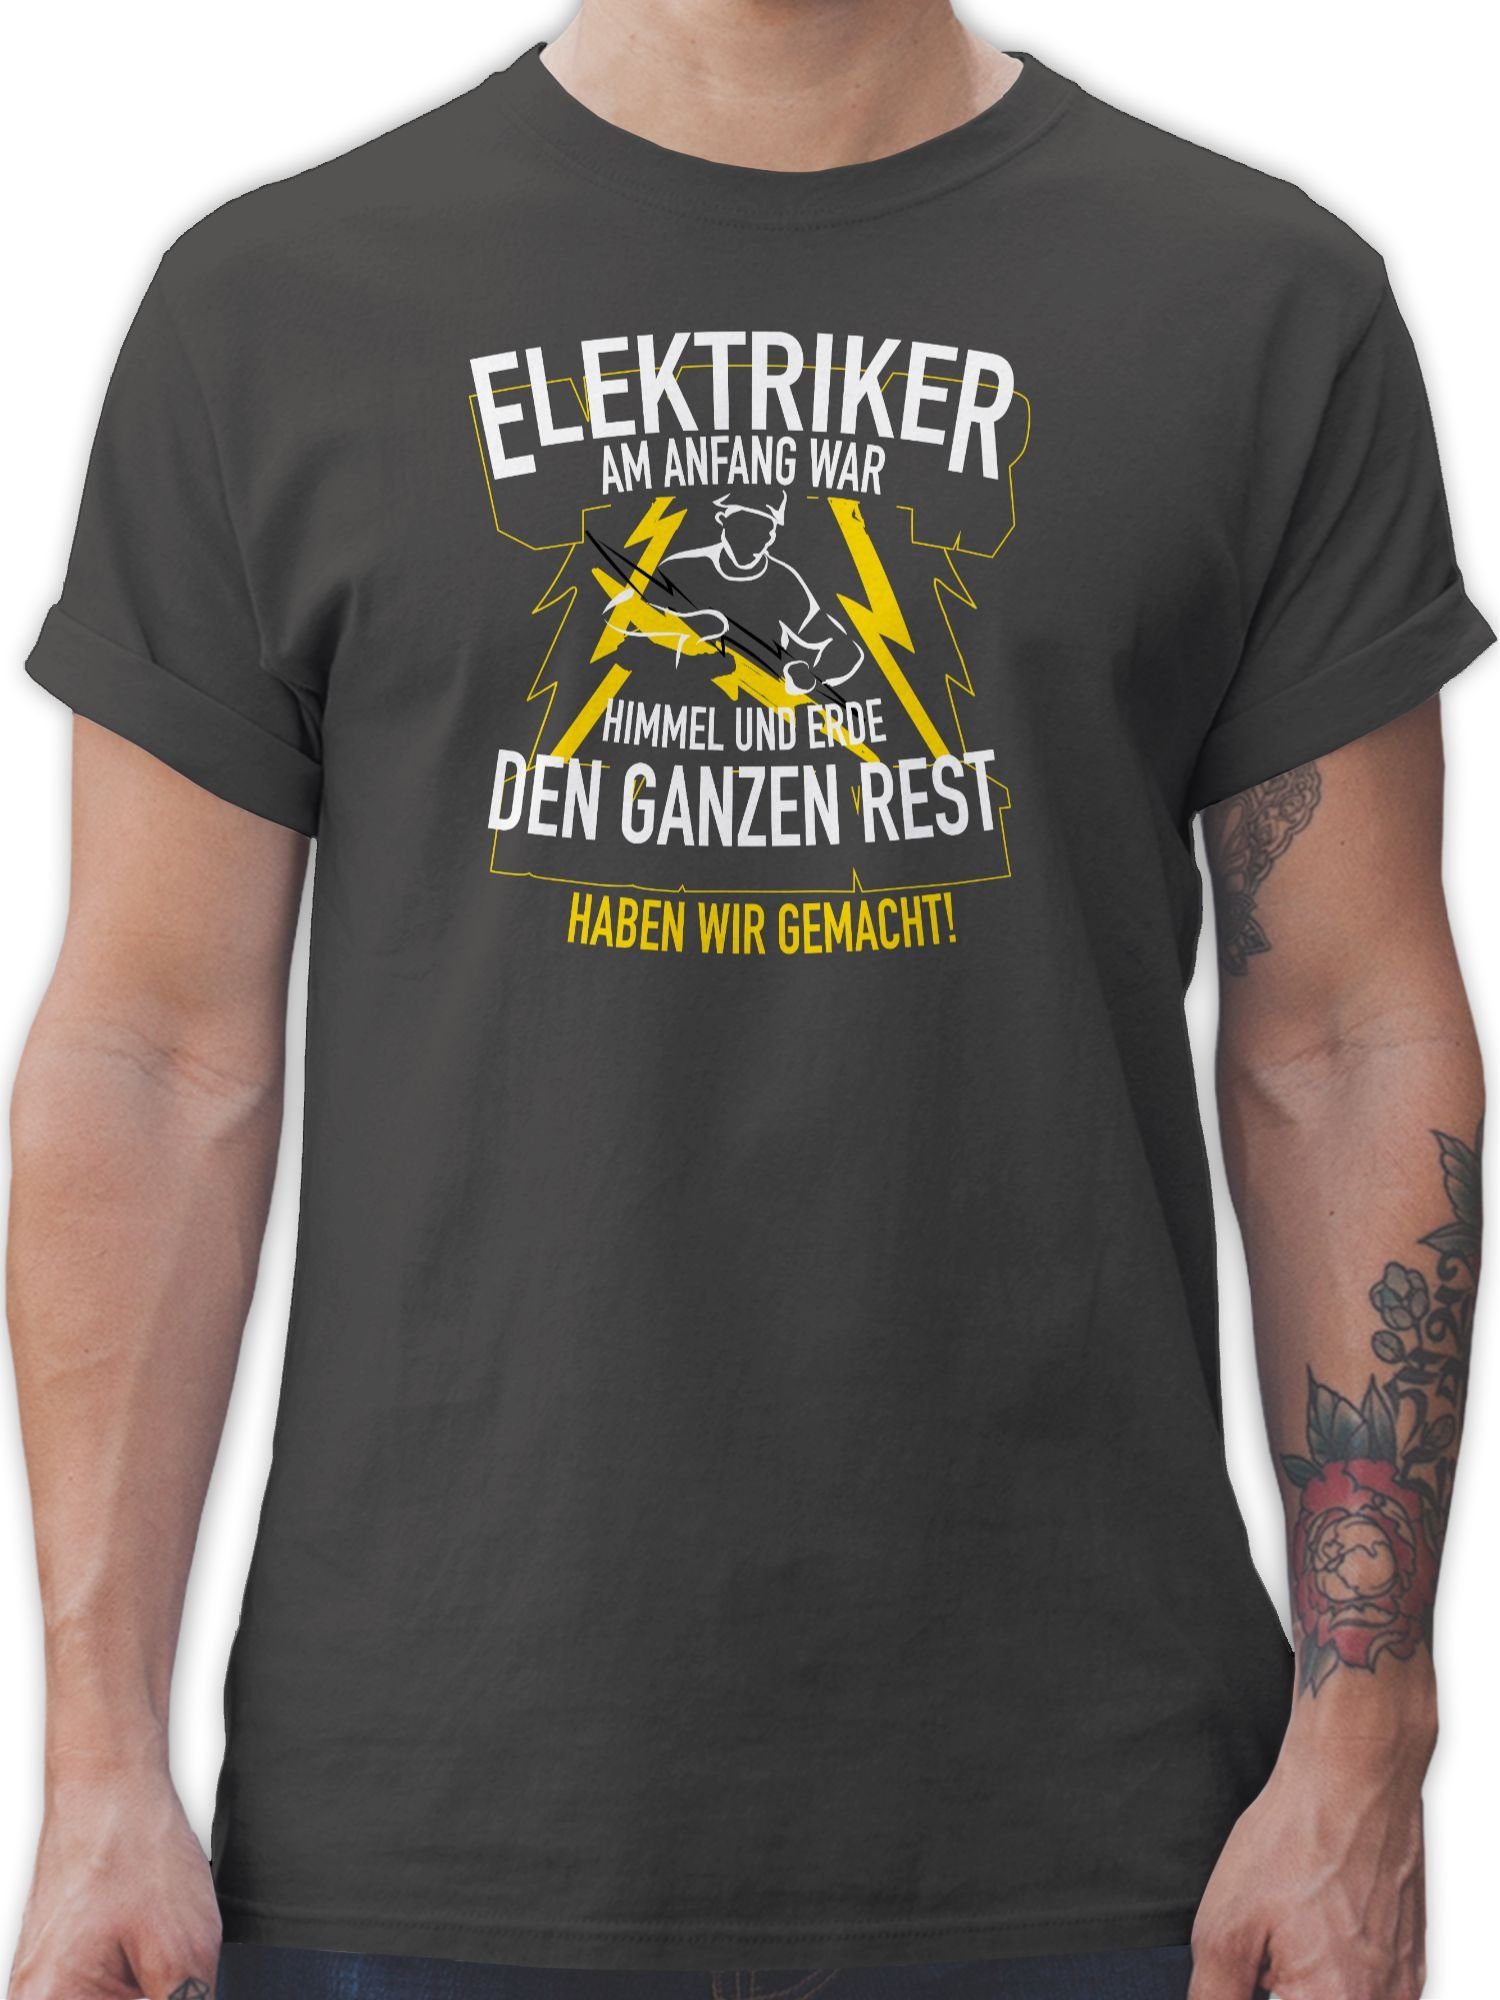 und 1 Erde Geschenke Anfang Dunkelgrau war Elektriker, Himmel Shirtracer Handwerker am T-Shirt